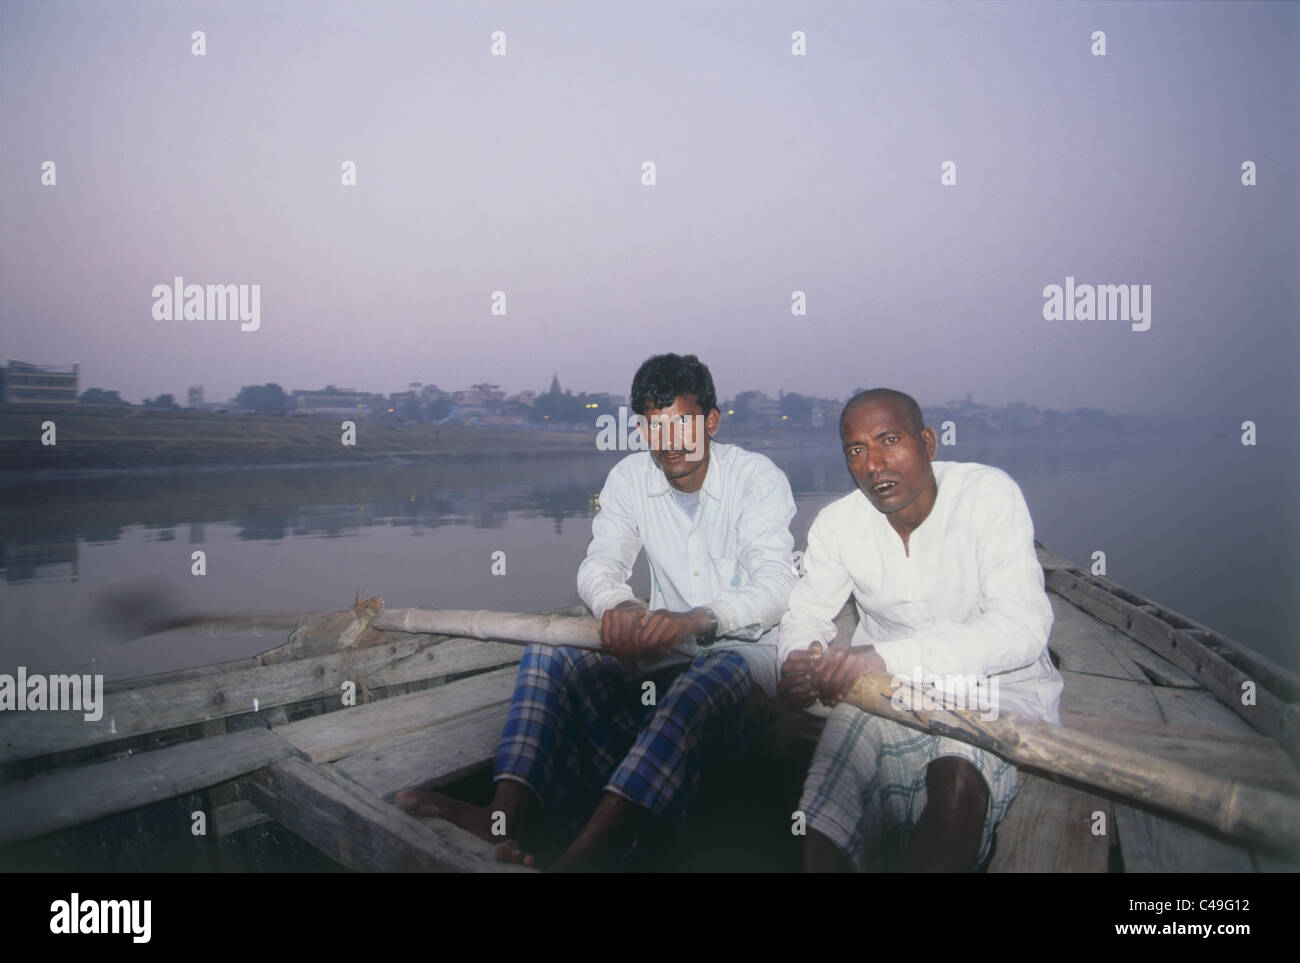 Fotografia dei due uomini indiano canottaggio la loro barca sulle rive di un fiume in Varanasi India Foto Stock